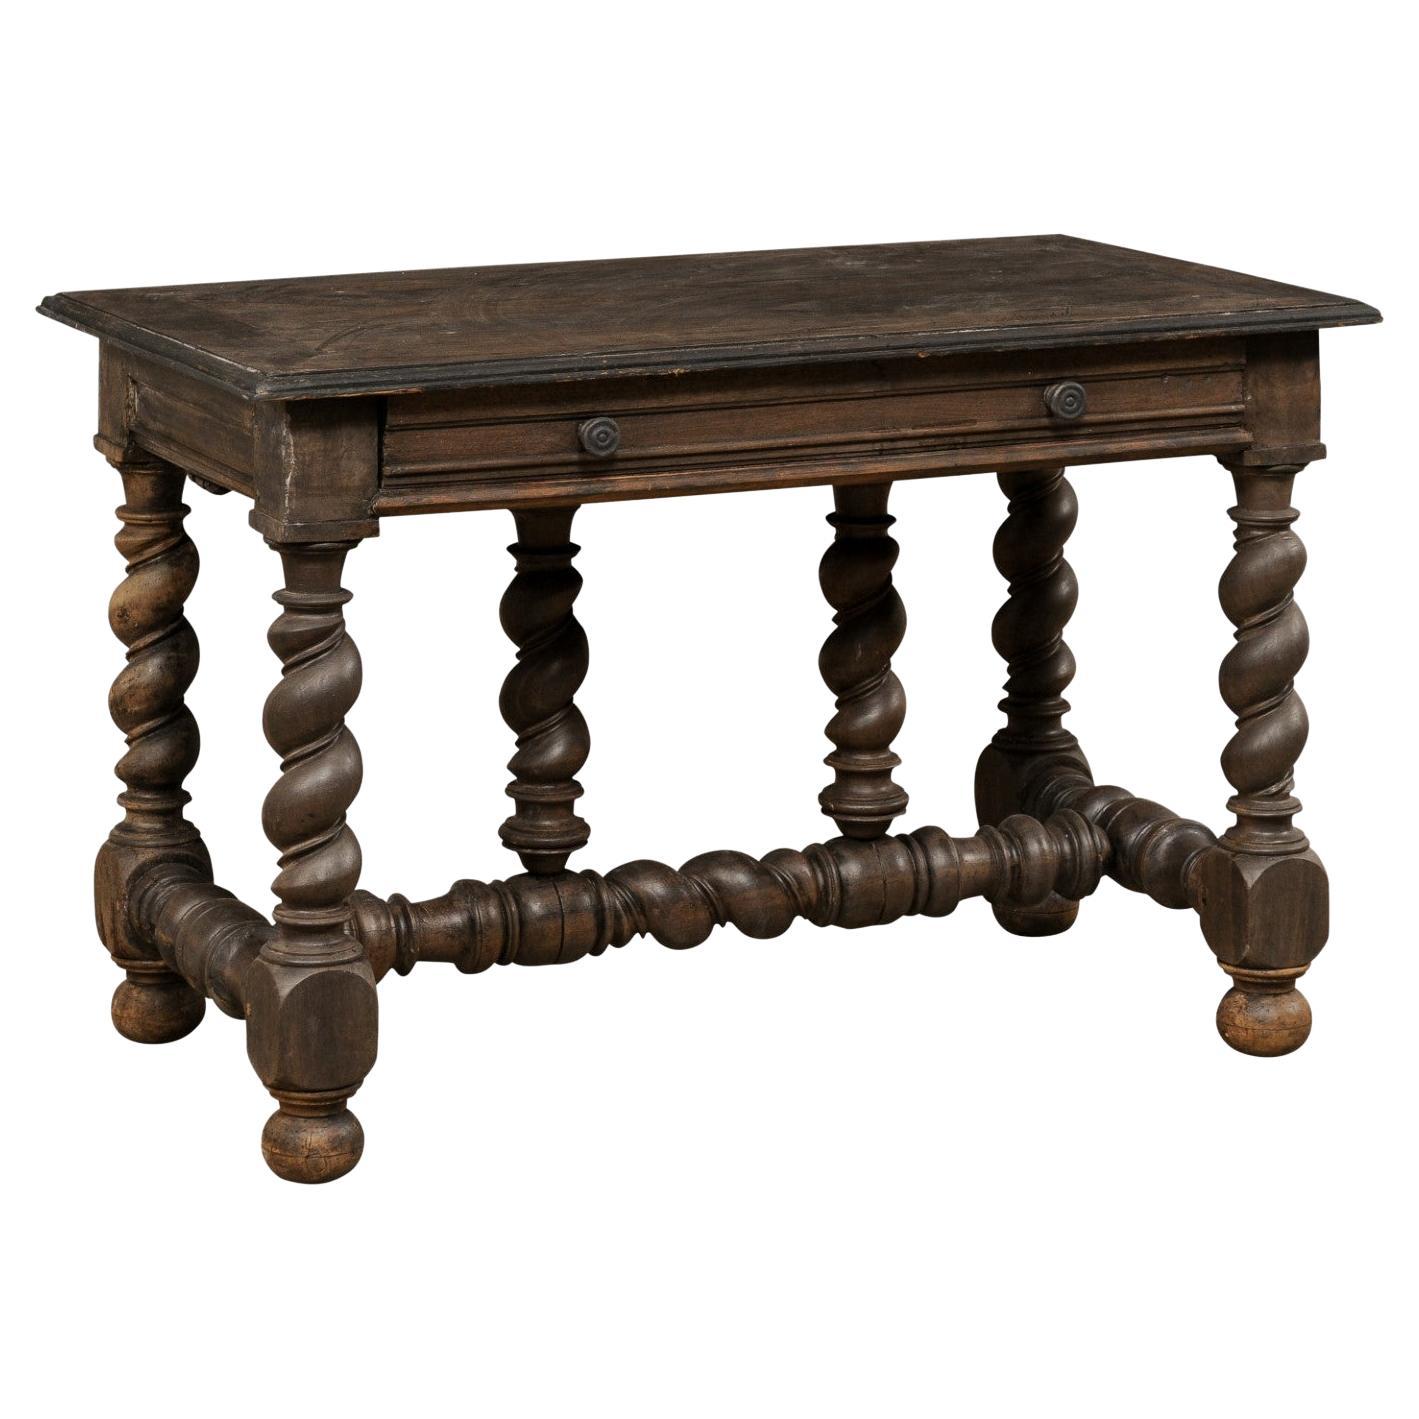 Table italienne ancienne avec un seul tiroir reposant sur des pieds et des traverses audacieusement sculptés